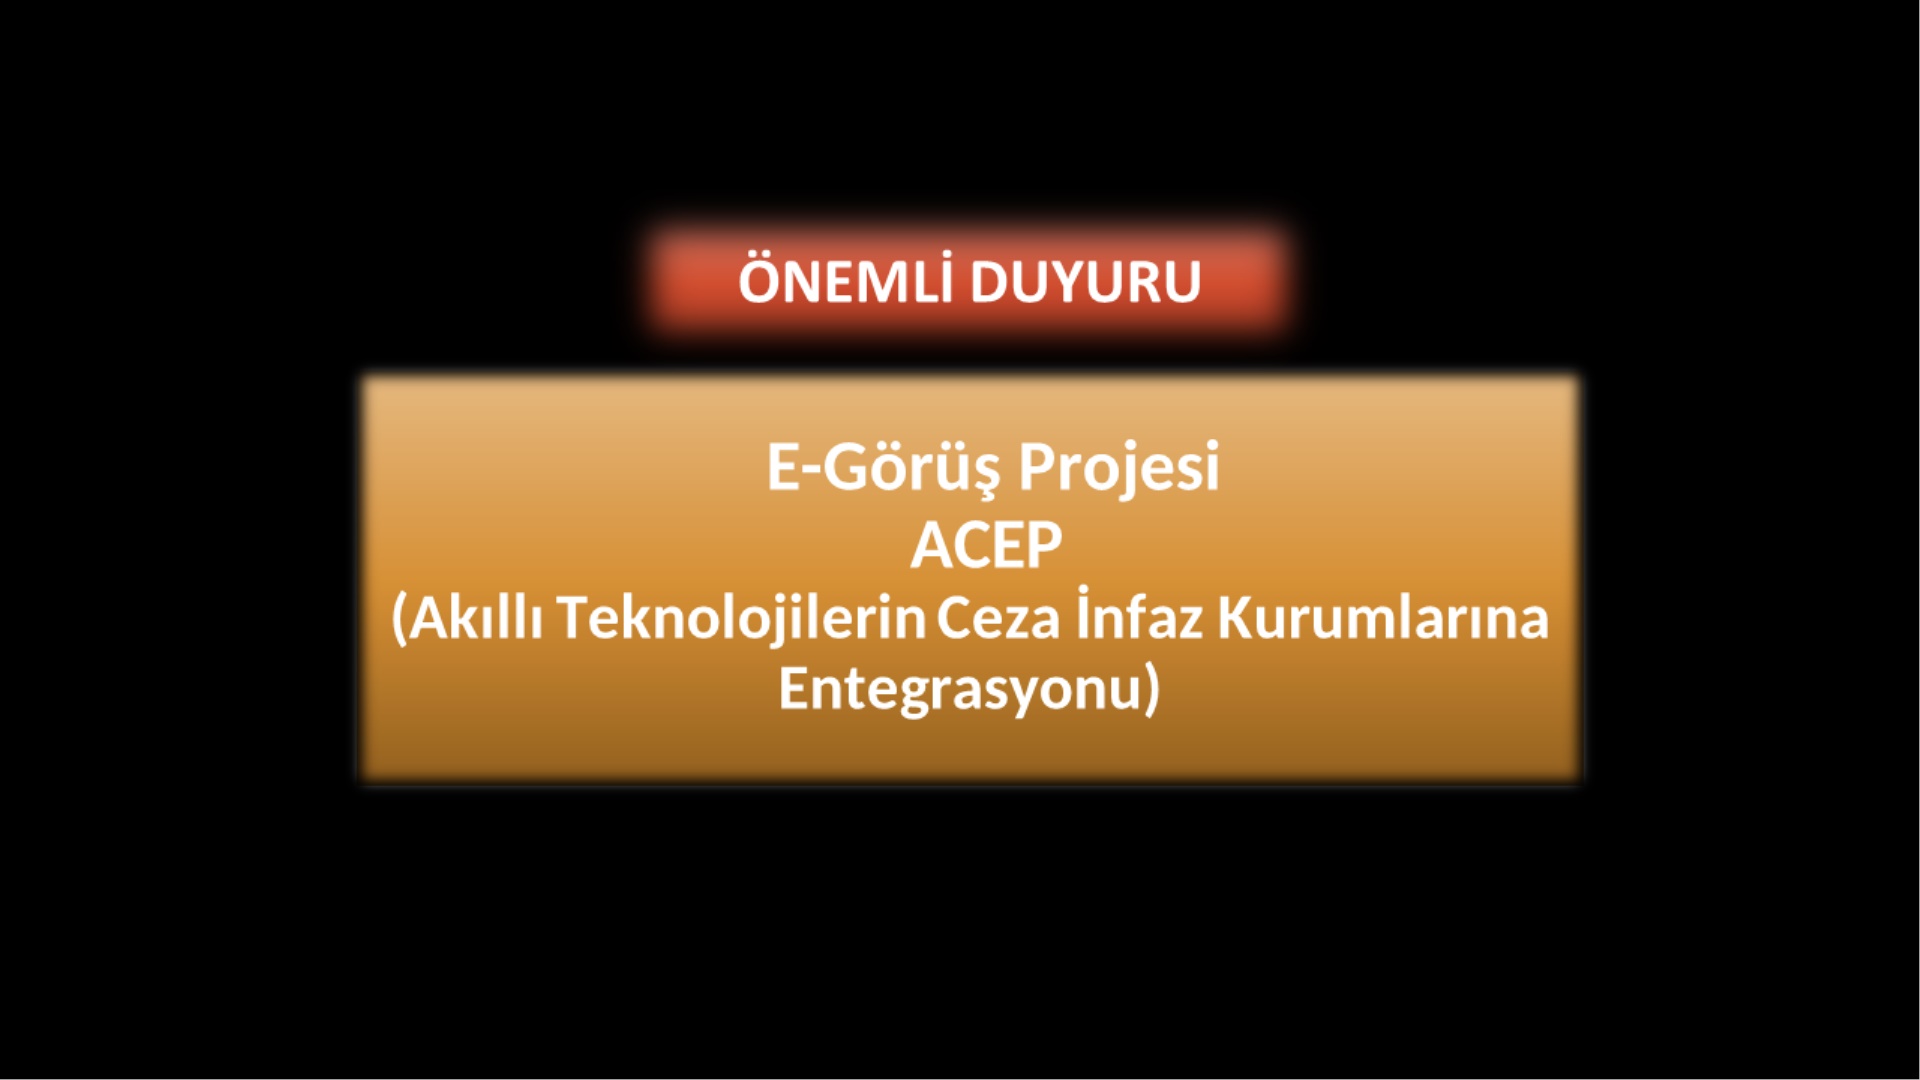 ACEP, E-Görüş Projesi Hakkında Önemli Duyuru